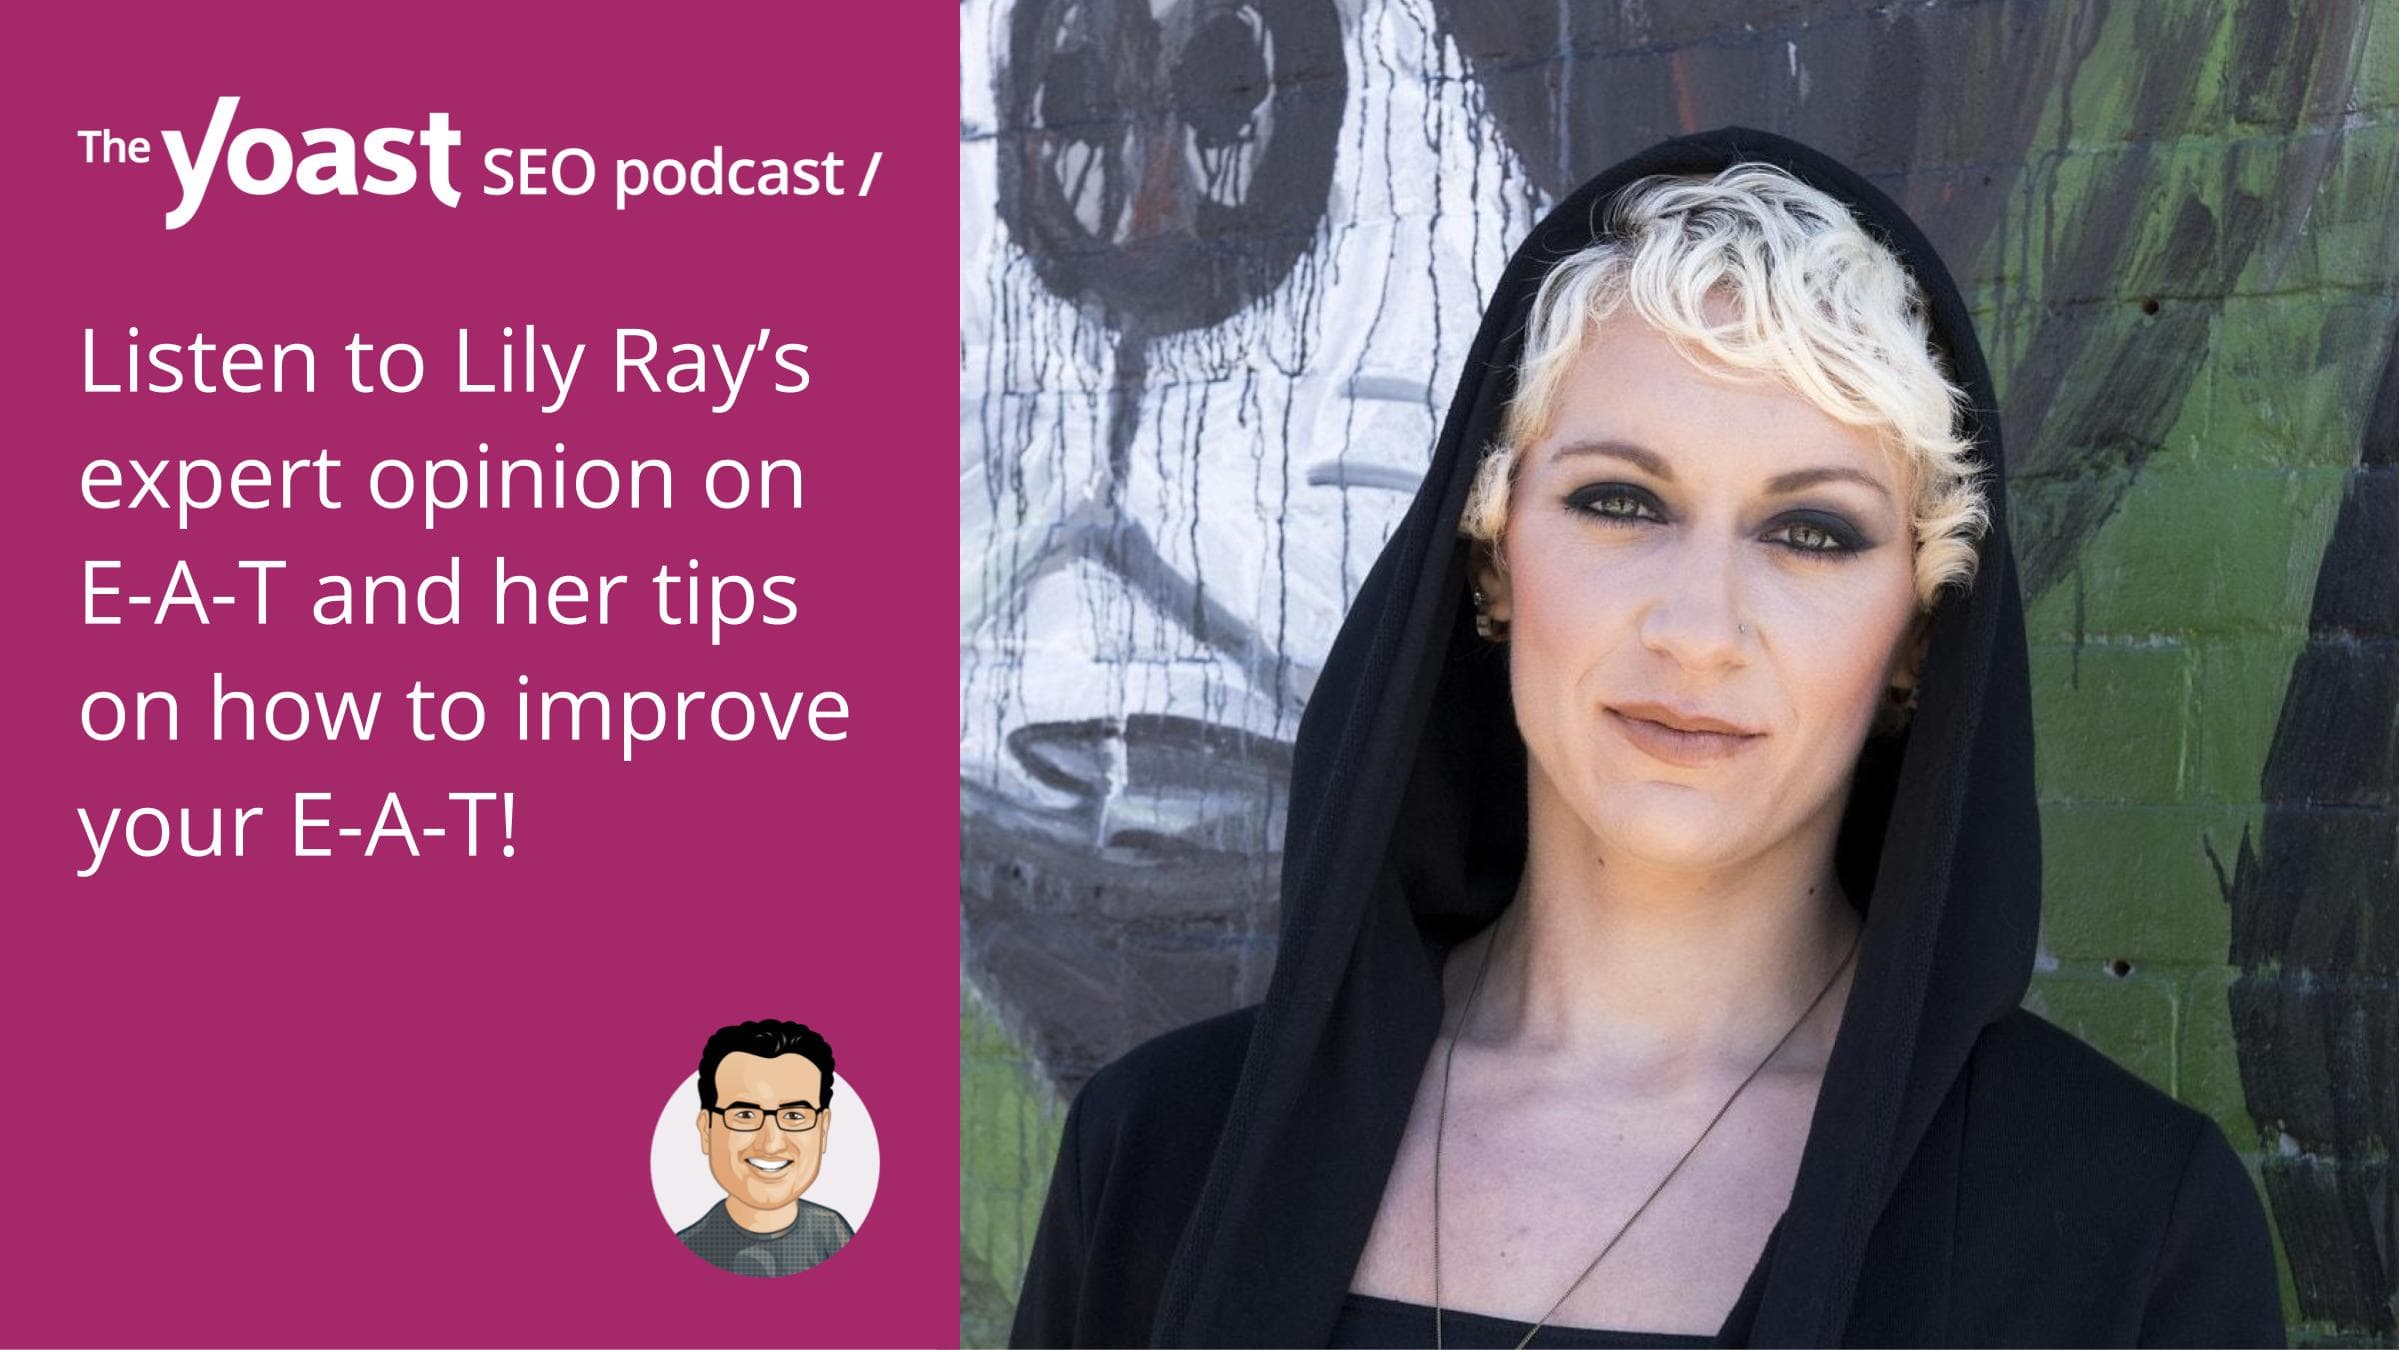 Lily Ray sur l’avenir de l’E-A-T, des publicités payantes, des espaces E-commerce et du référencement • Le podcast Yoast SEO